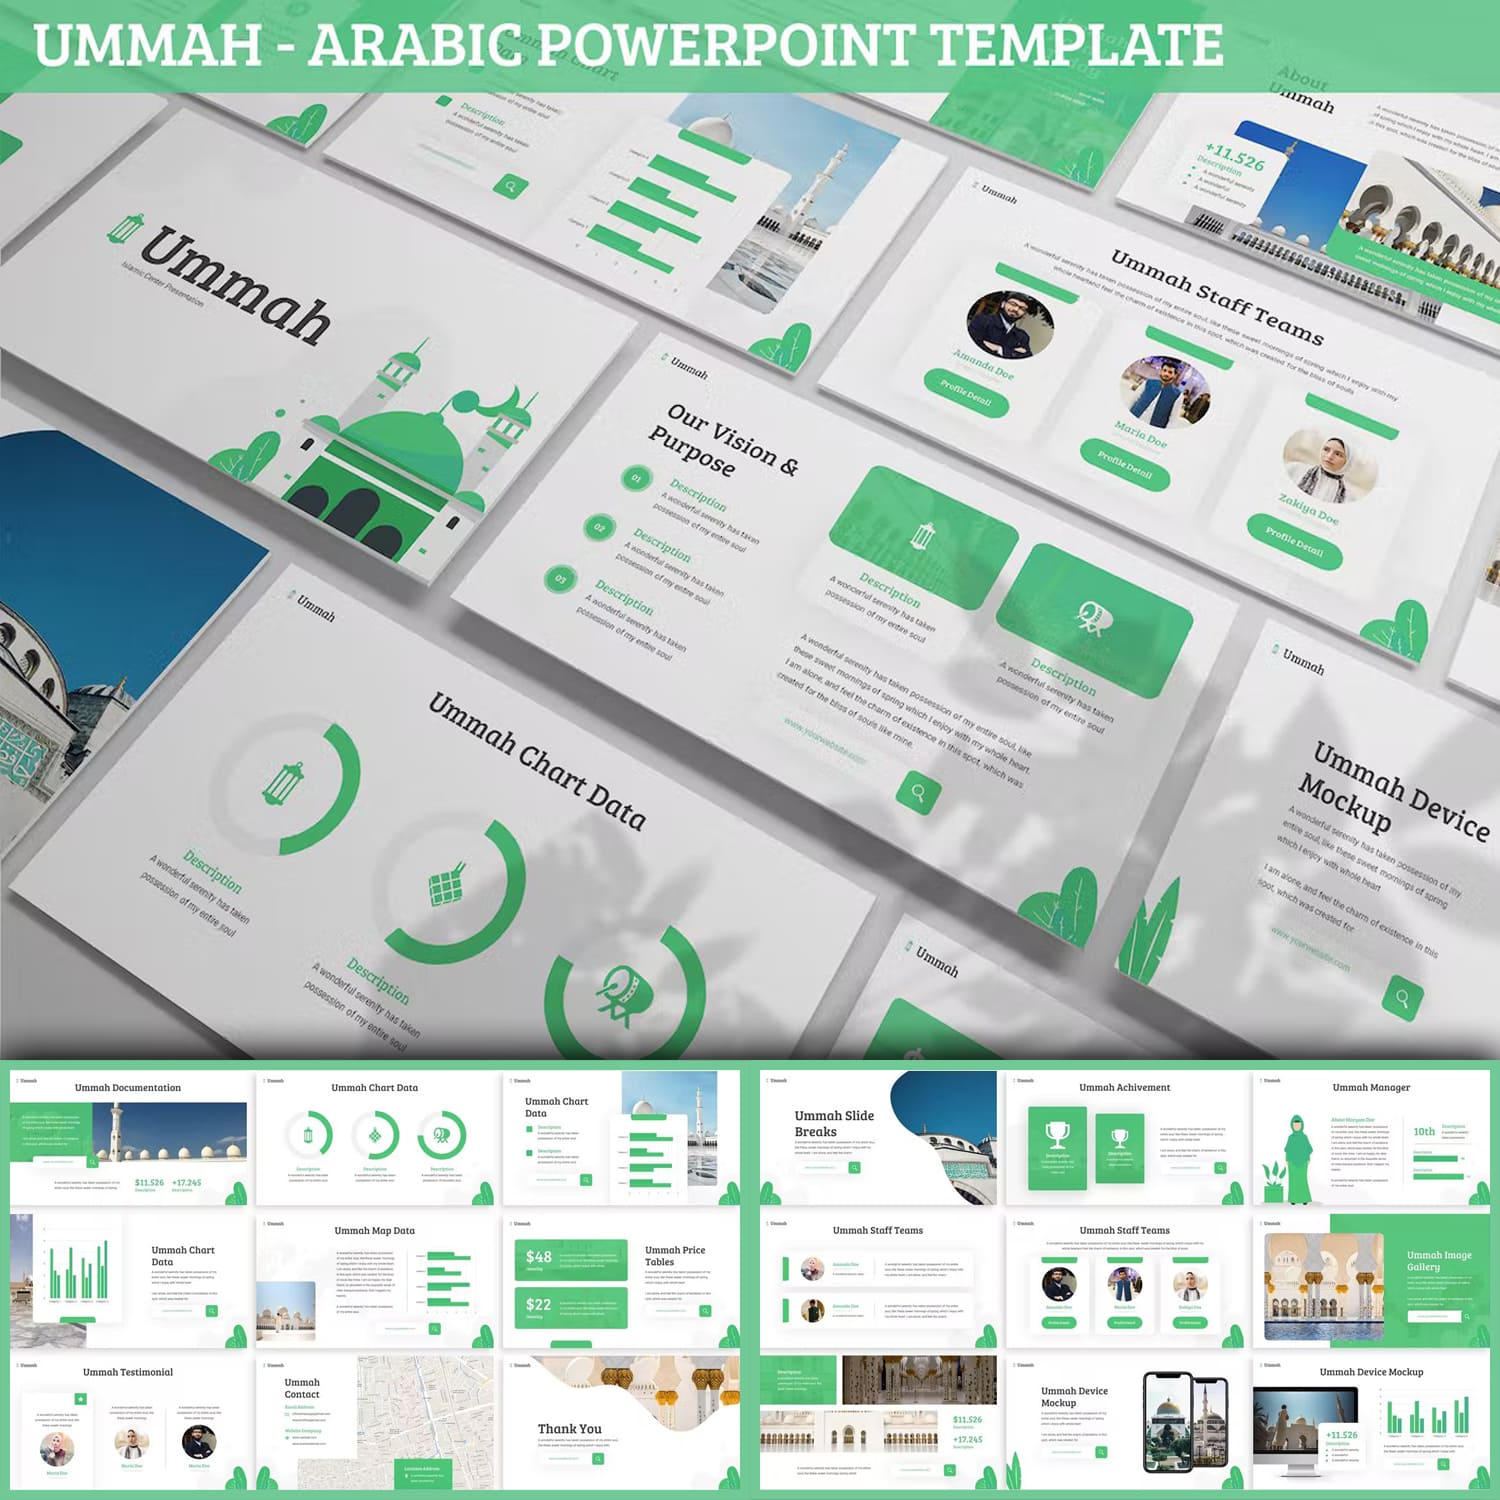 Ummah - Arabic Powerpoint Template.